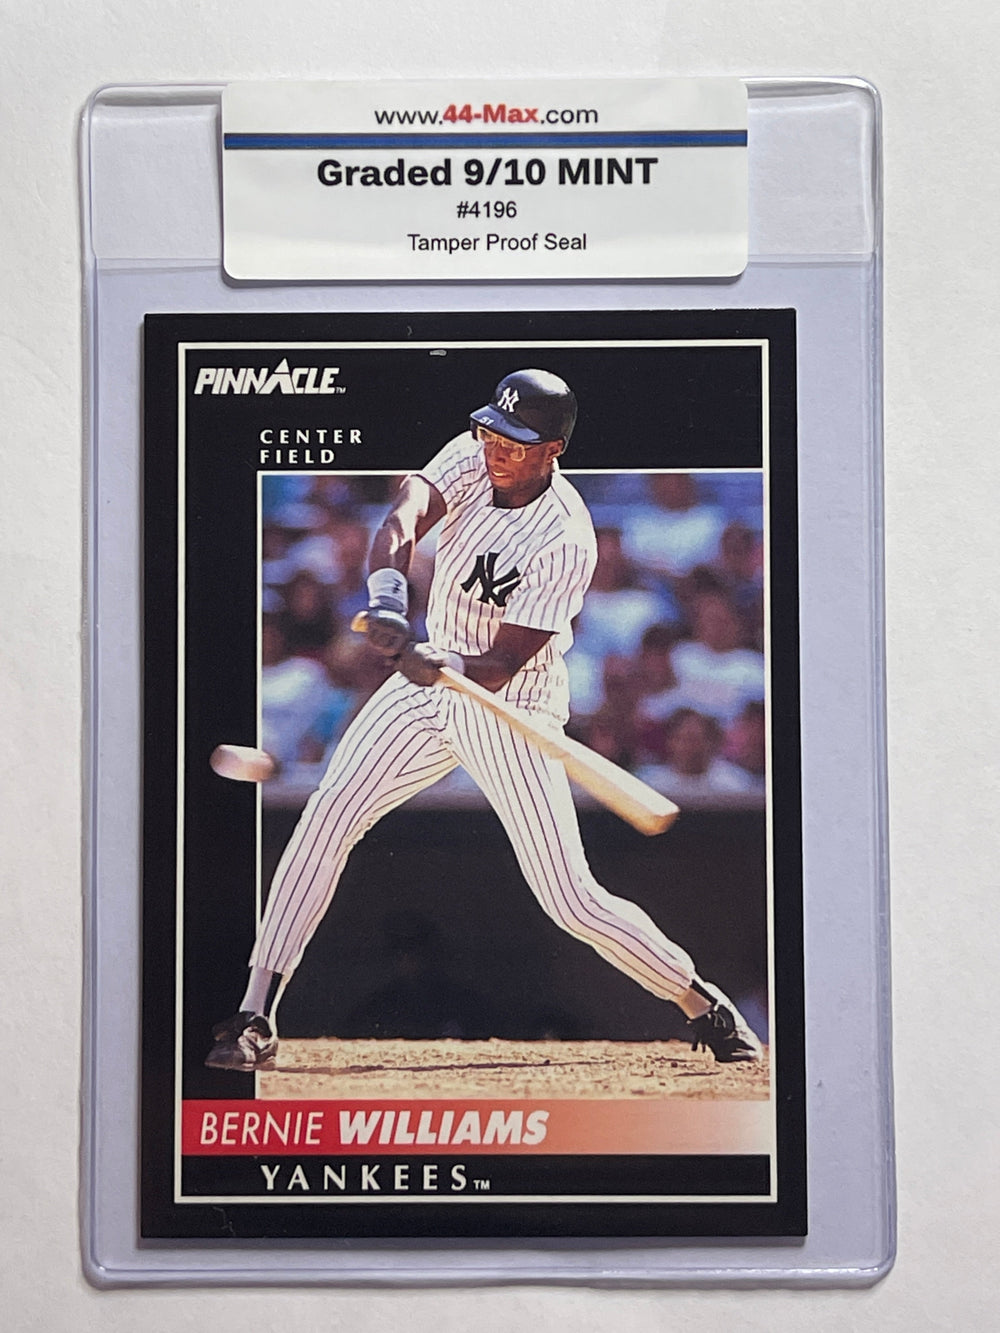 Bernie Williams 1992 Pinnacle Baseball Card. 44-Max 9/10 Mint #4196